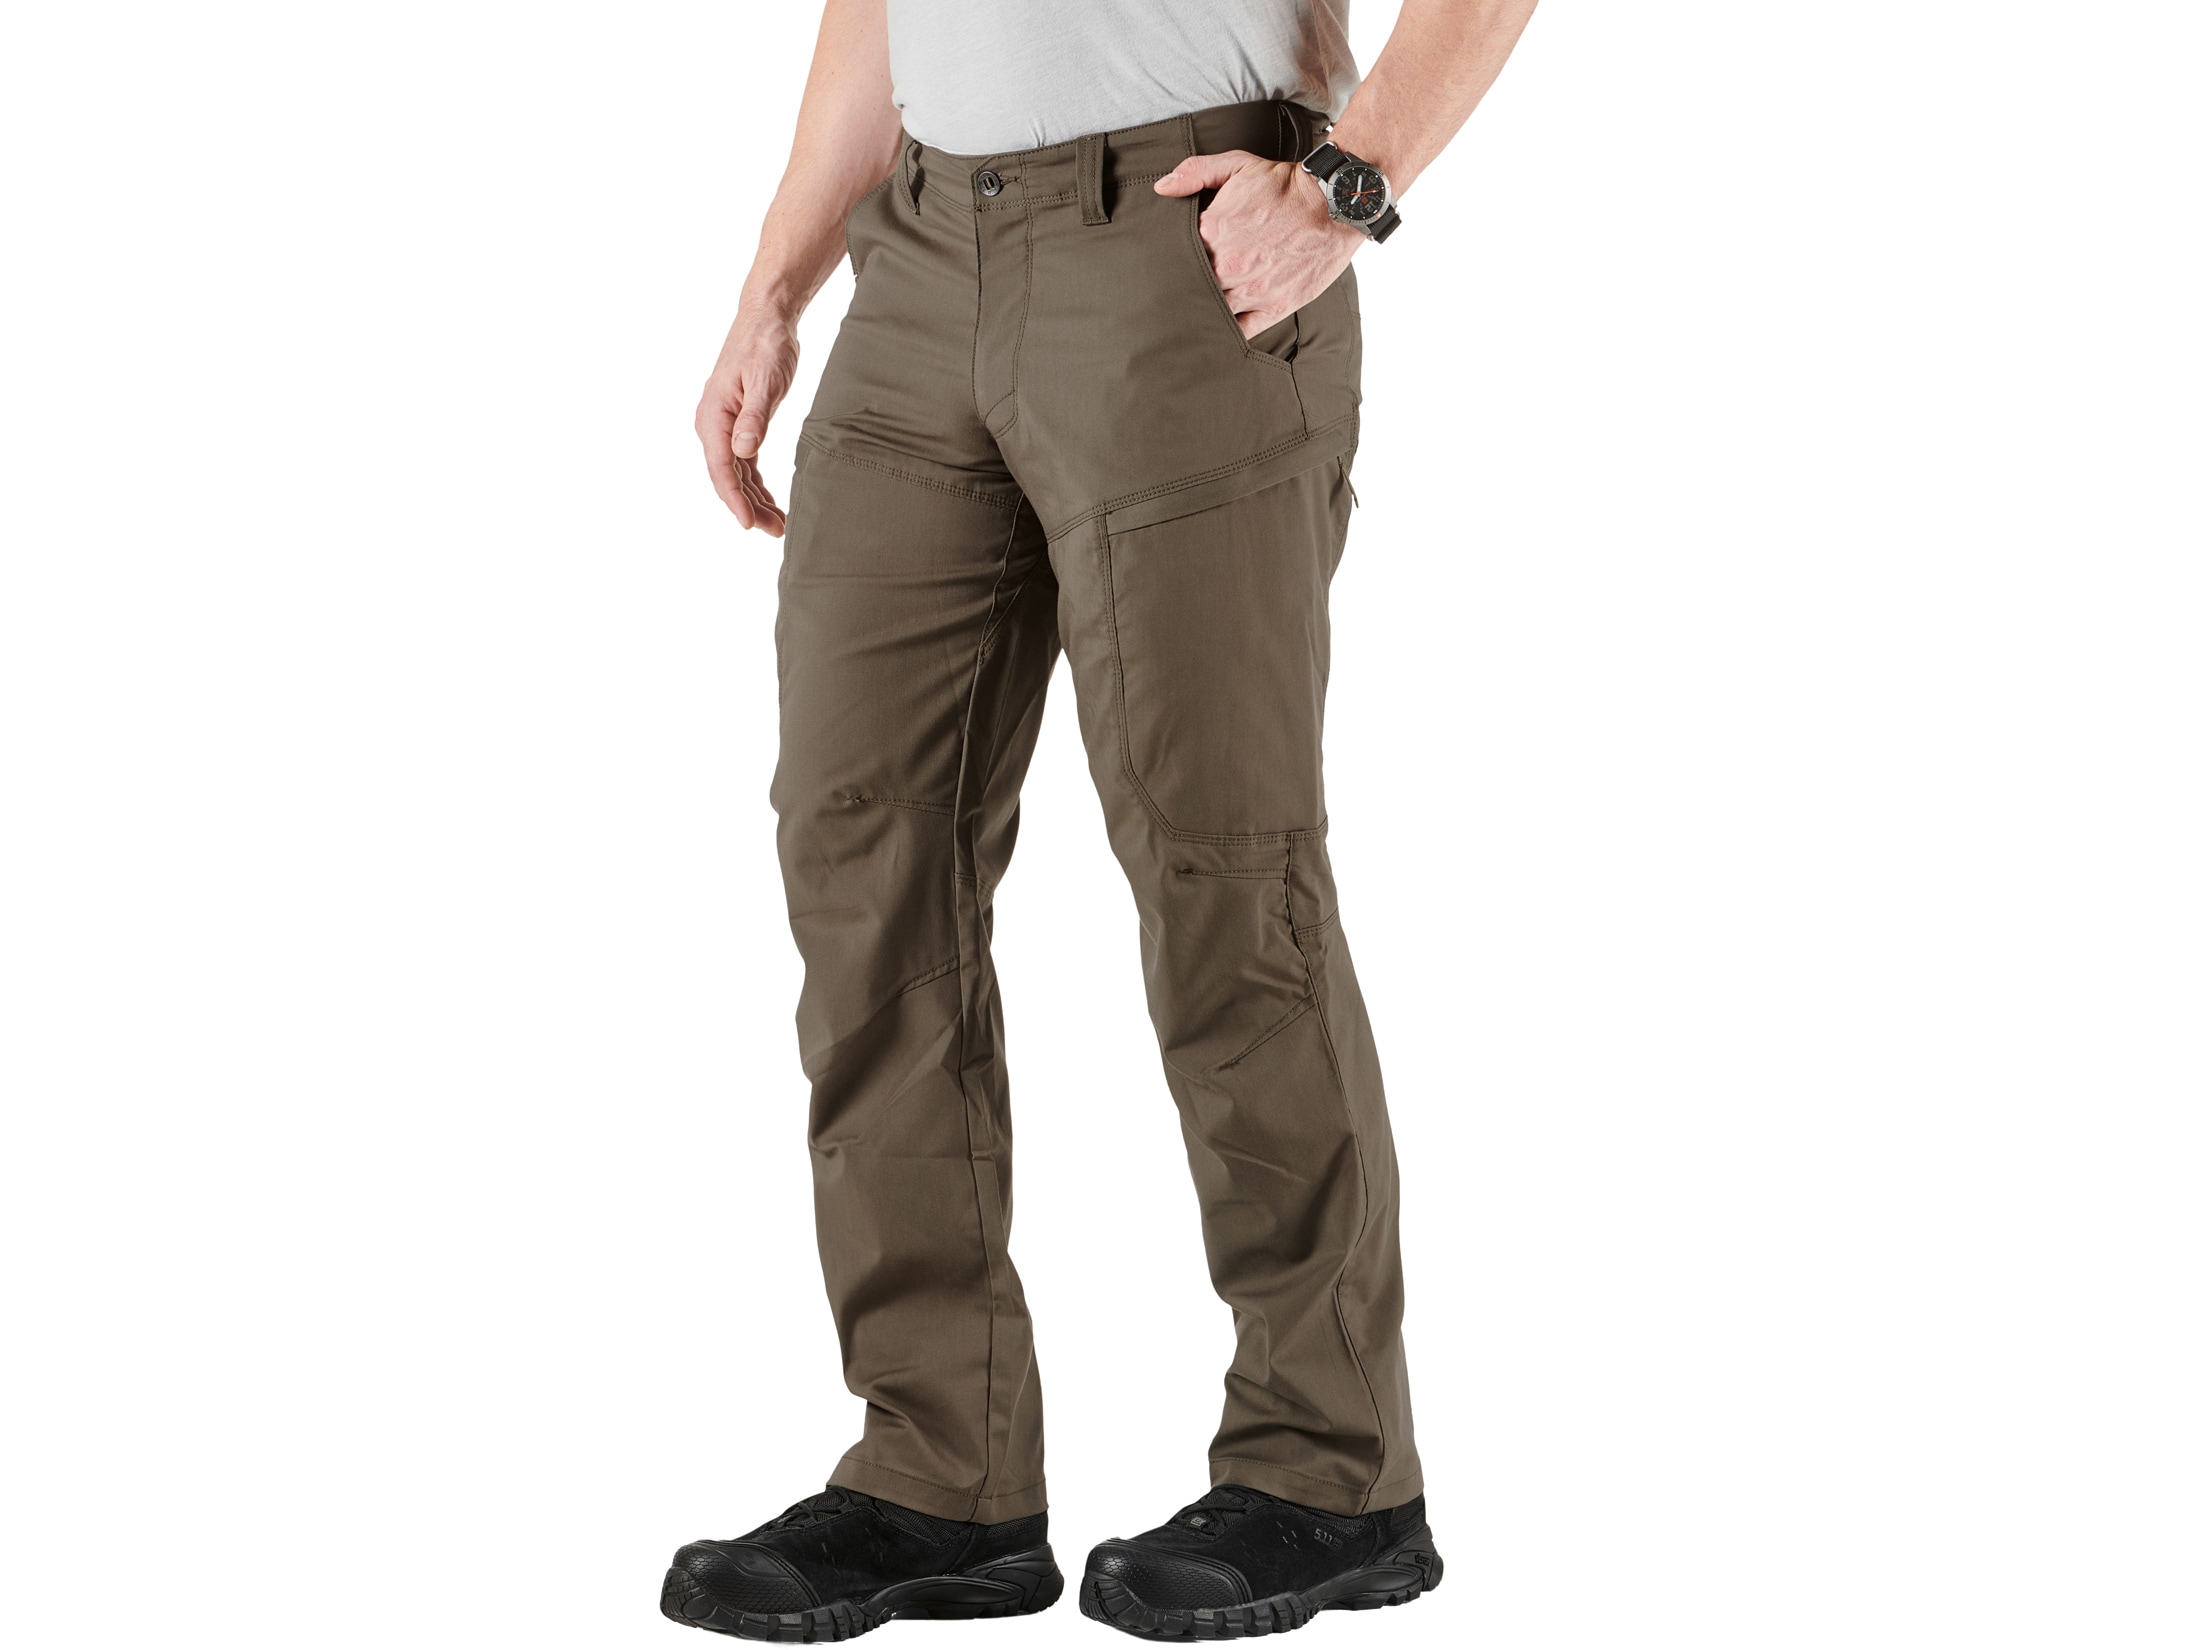 5.11 Men's Apex Tactical Pants Flex-Tac Ripstop Polyester/Cotton Storm